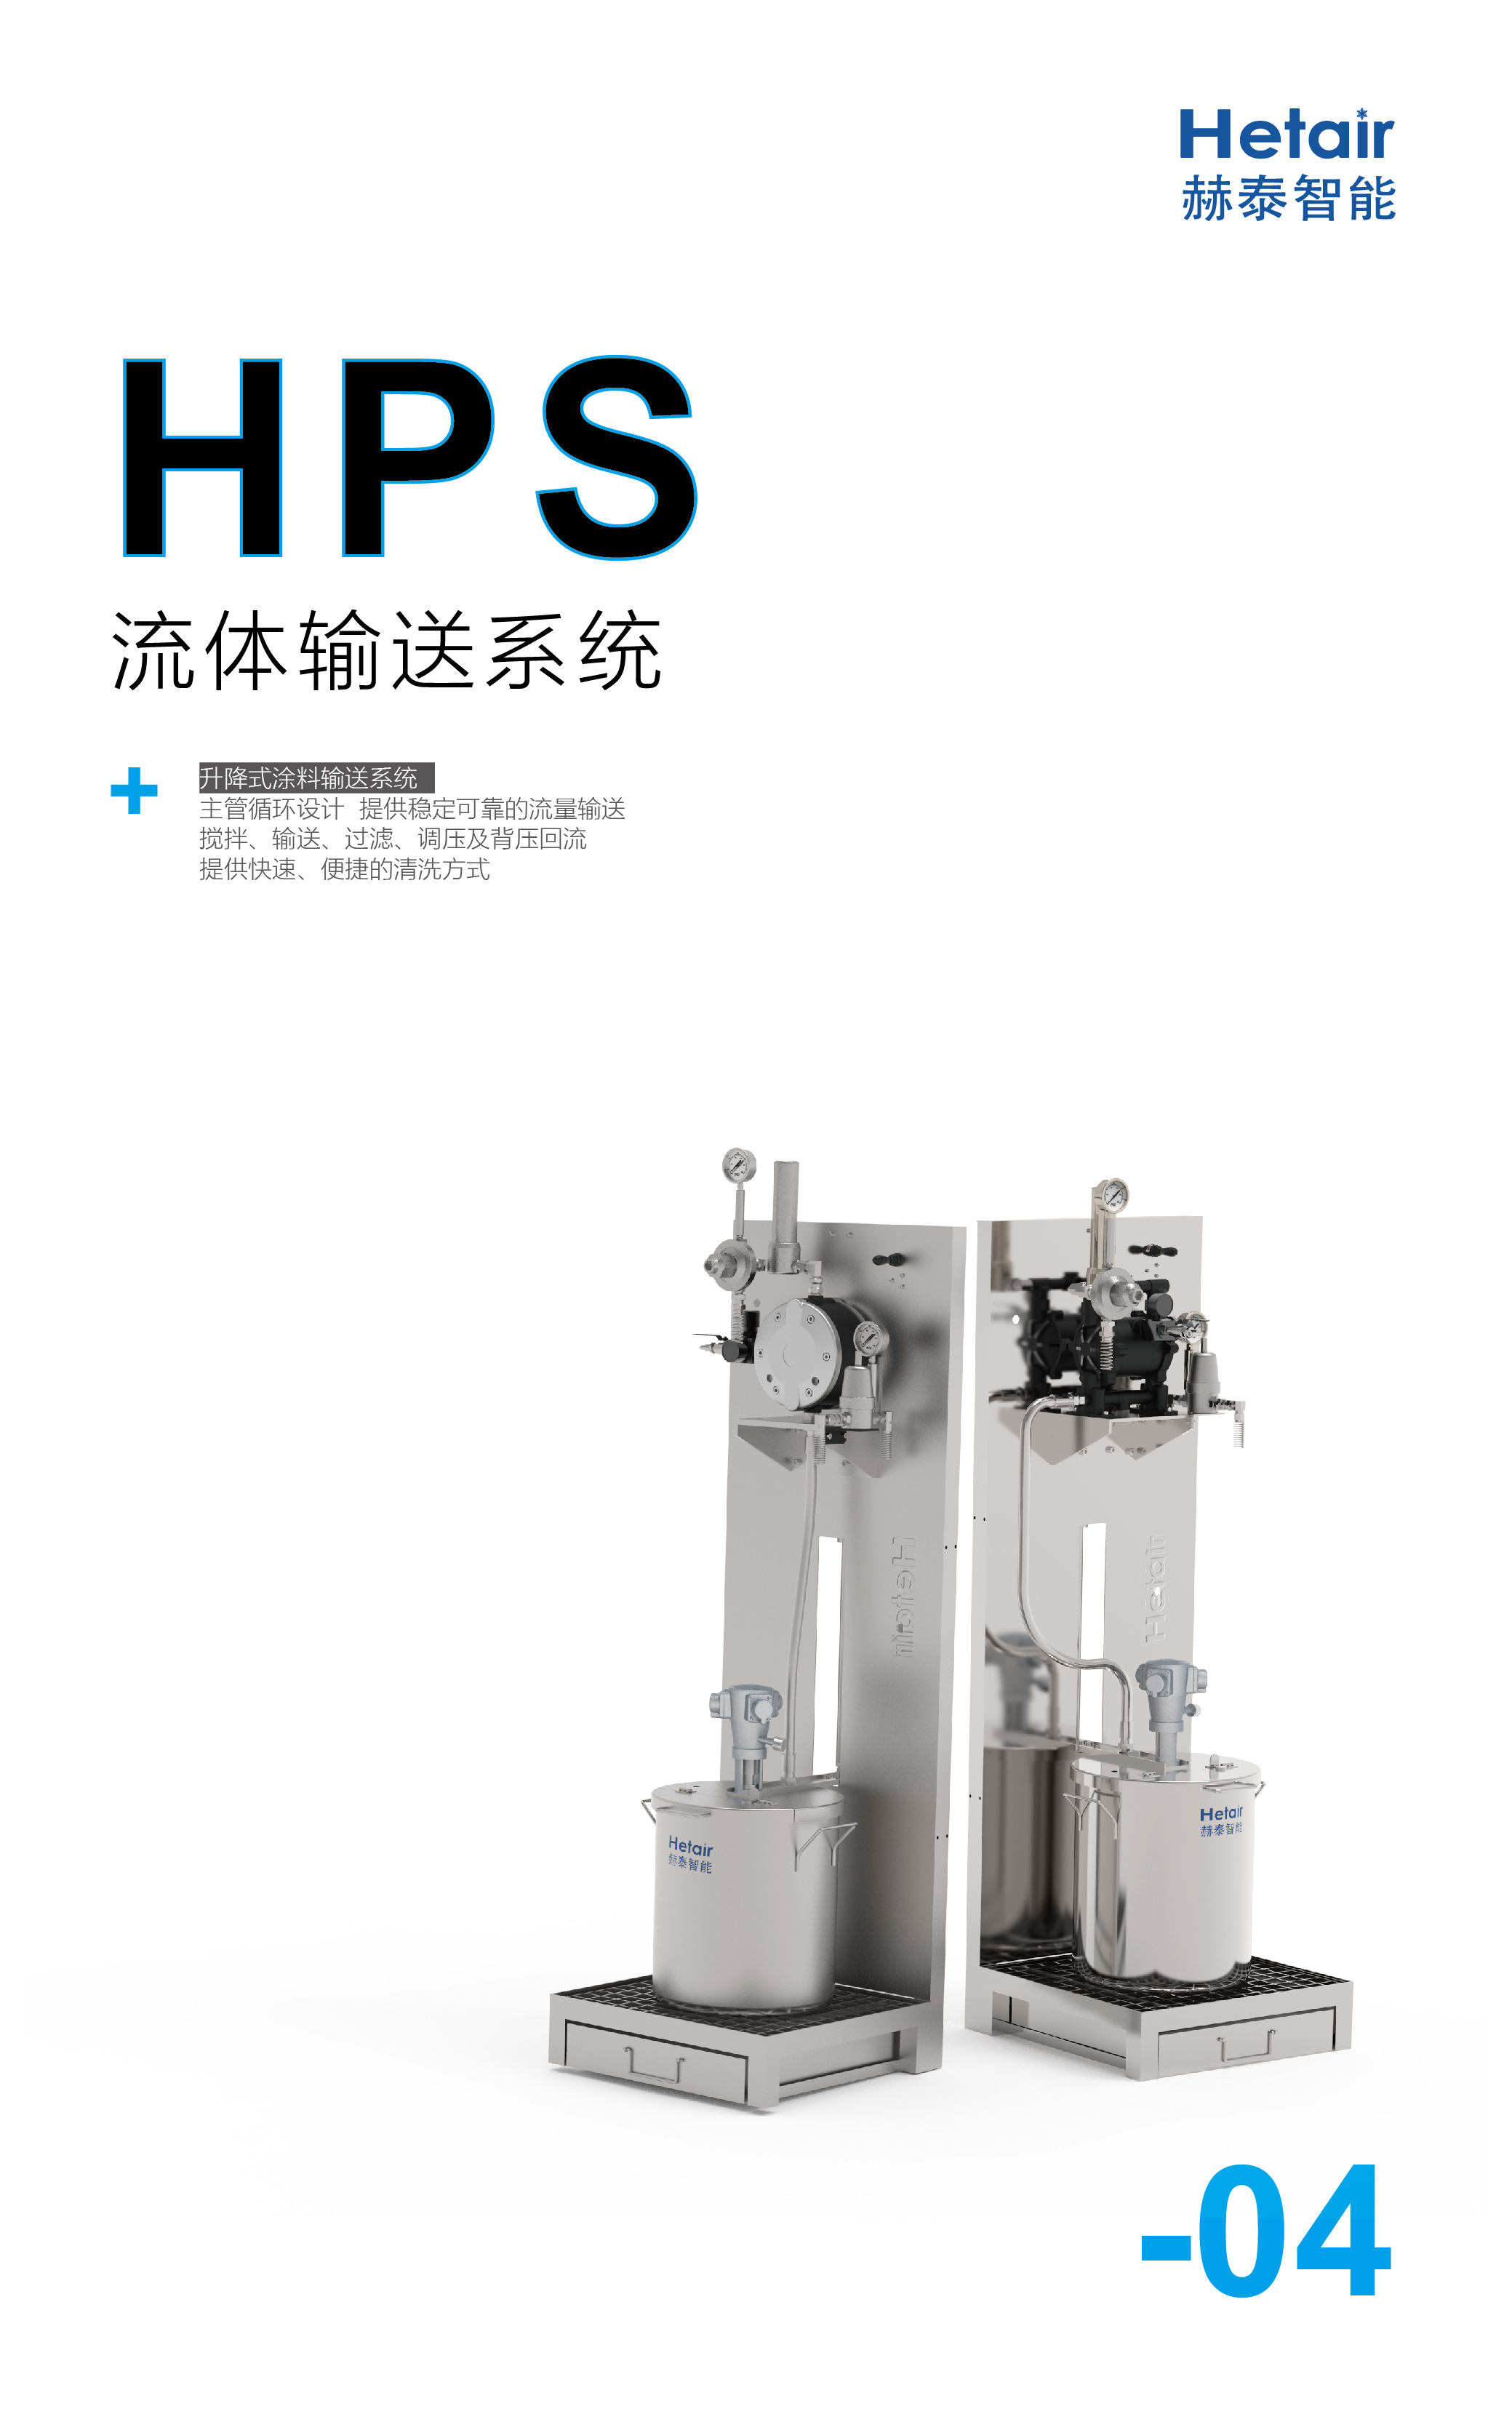 HPS- A-01.jpg